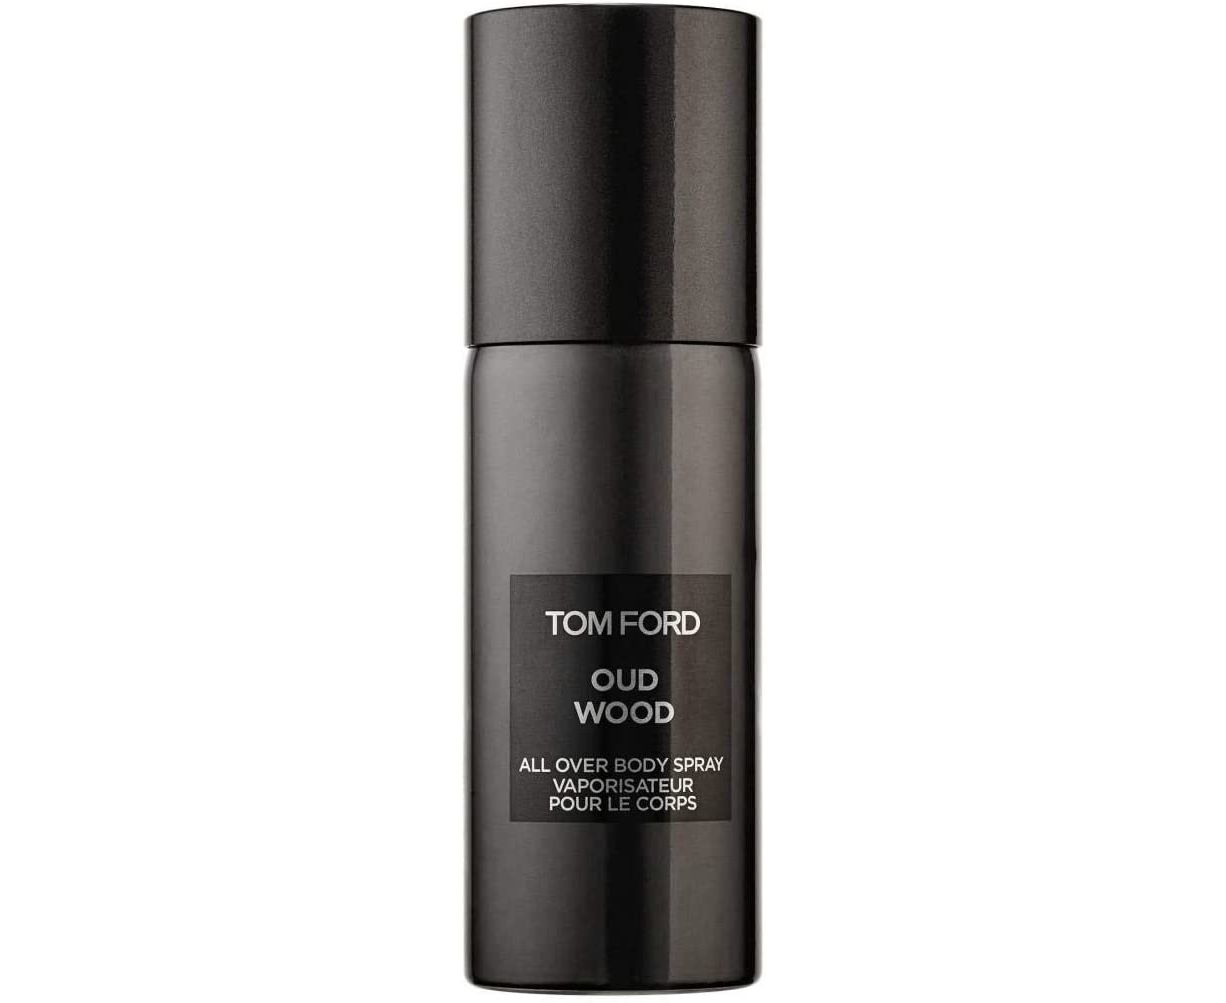 Buy Tom Ford Oud Wood Body Spray for Unisex 150mL | Arablly.com